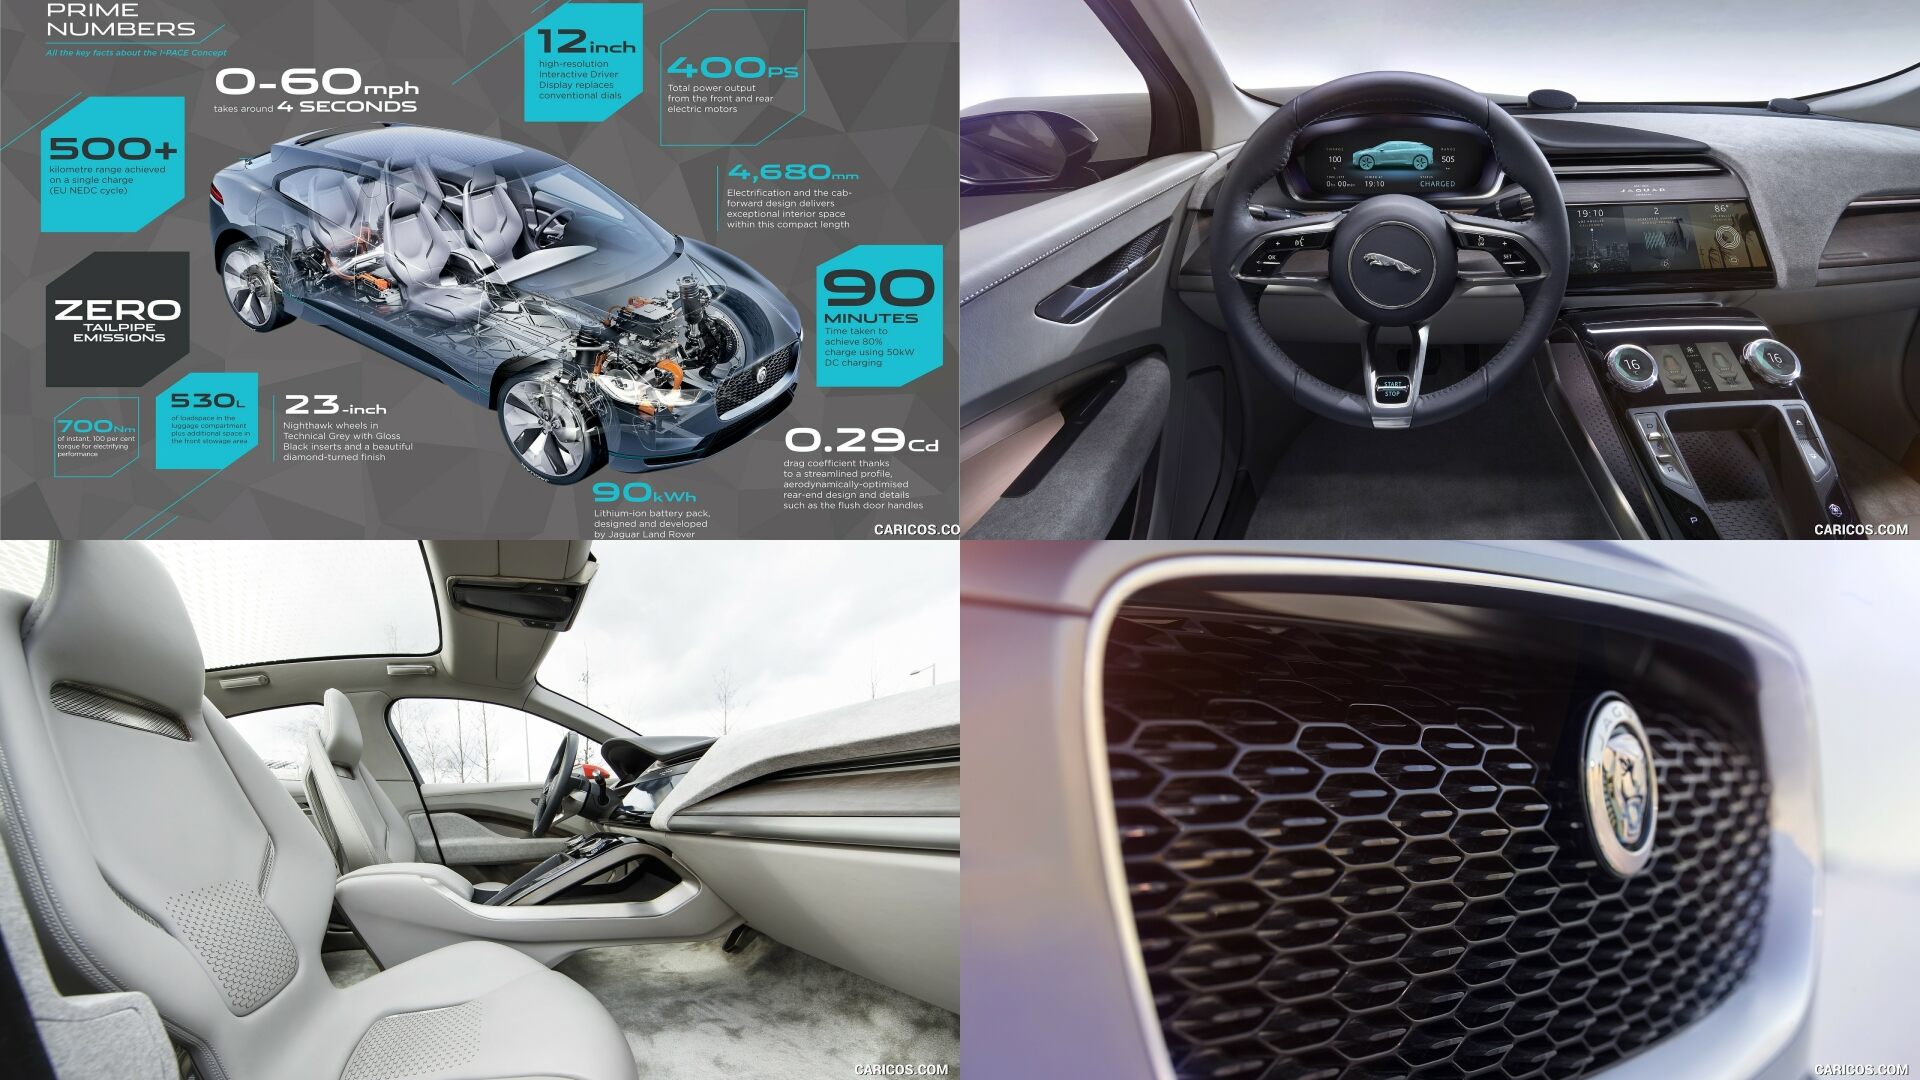 The 2016 Jaguar i-pace EV Concept (Credits Jaguar)